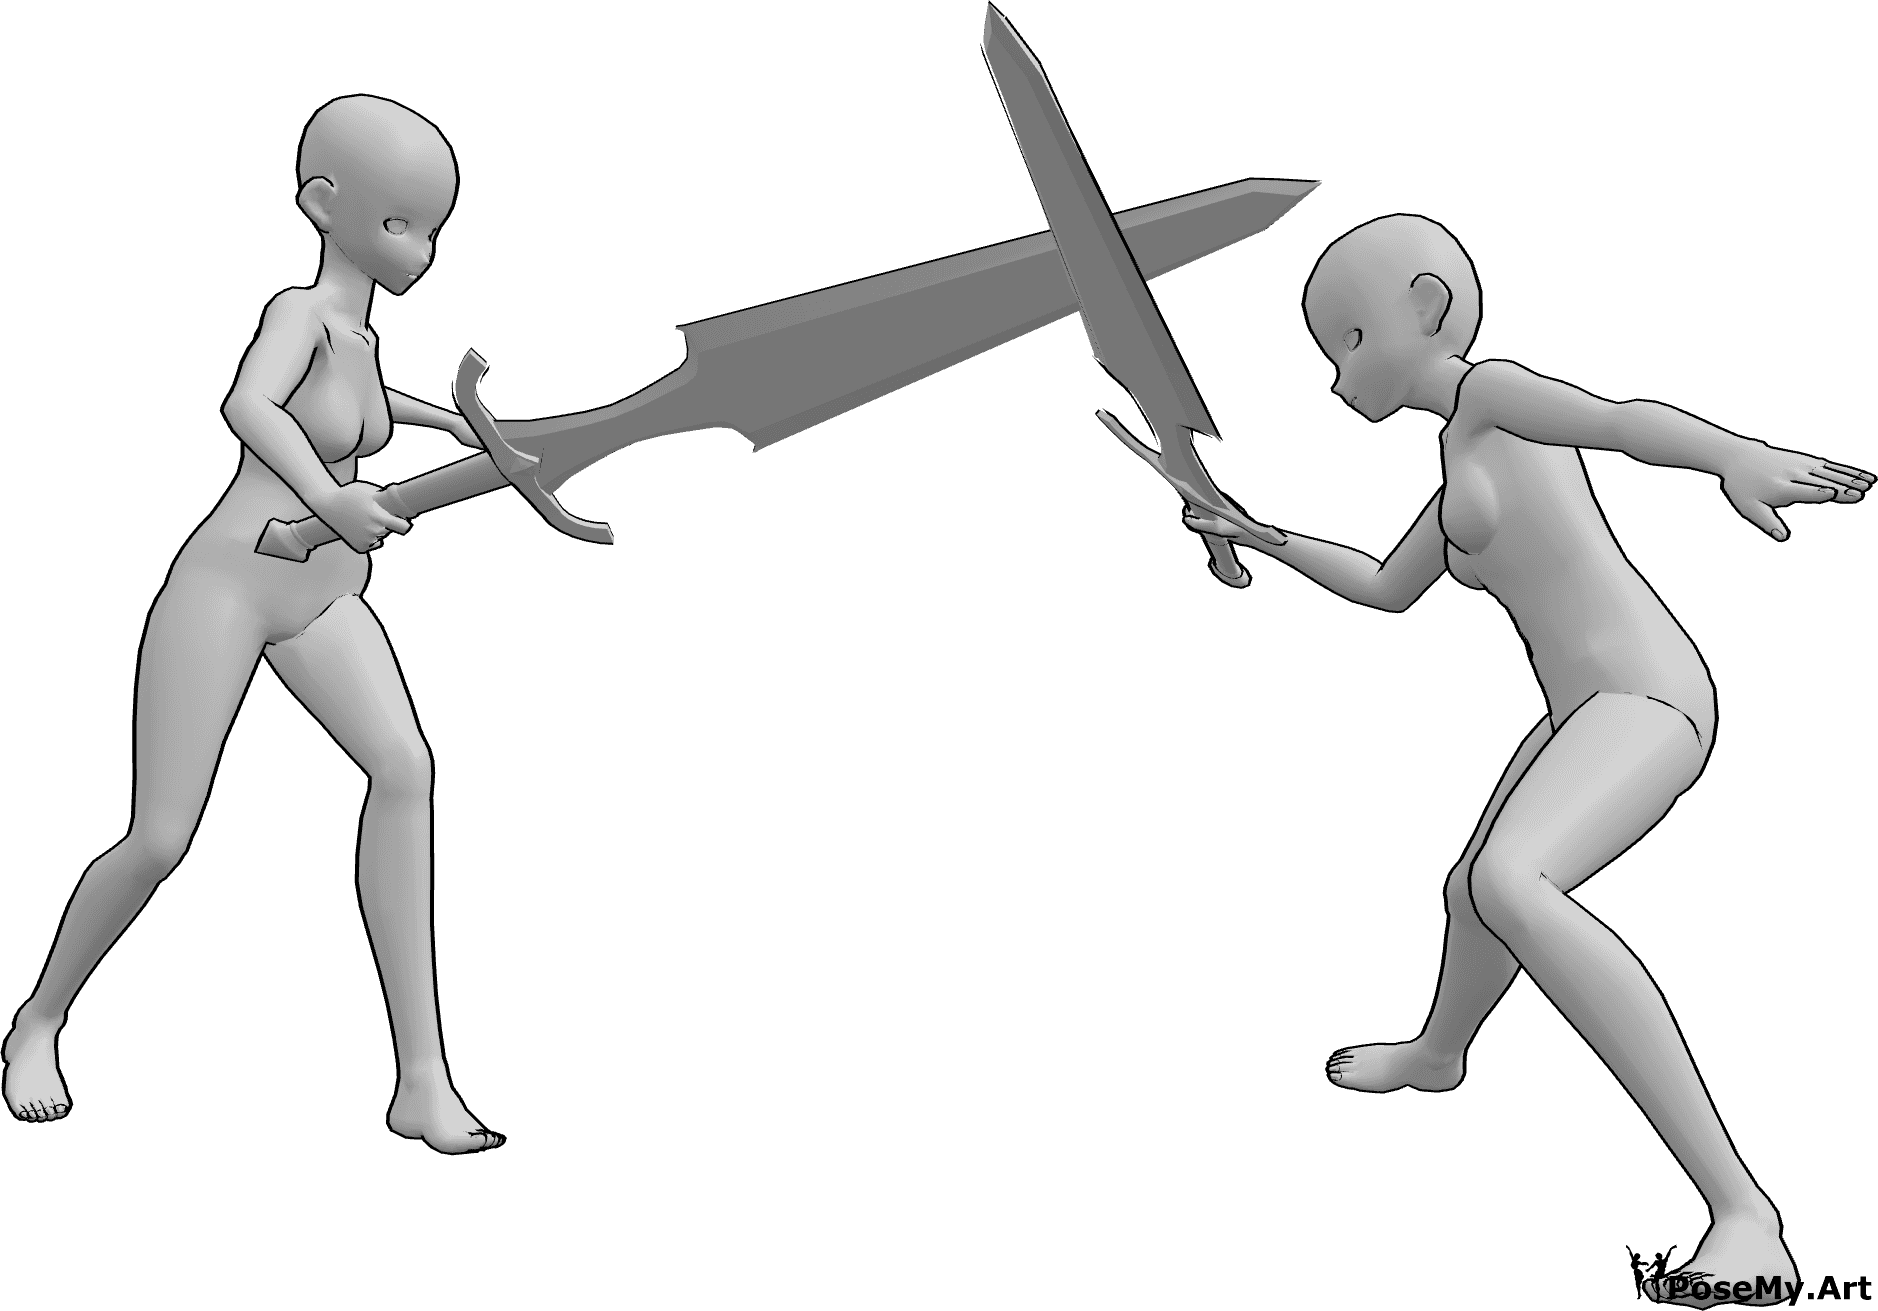 Référence des poses- Pose de combat d'épée d'anime - Des femmes d'animation se battent avec de grandes épées, l'une d'entre elles bloque un coup.